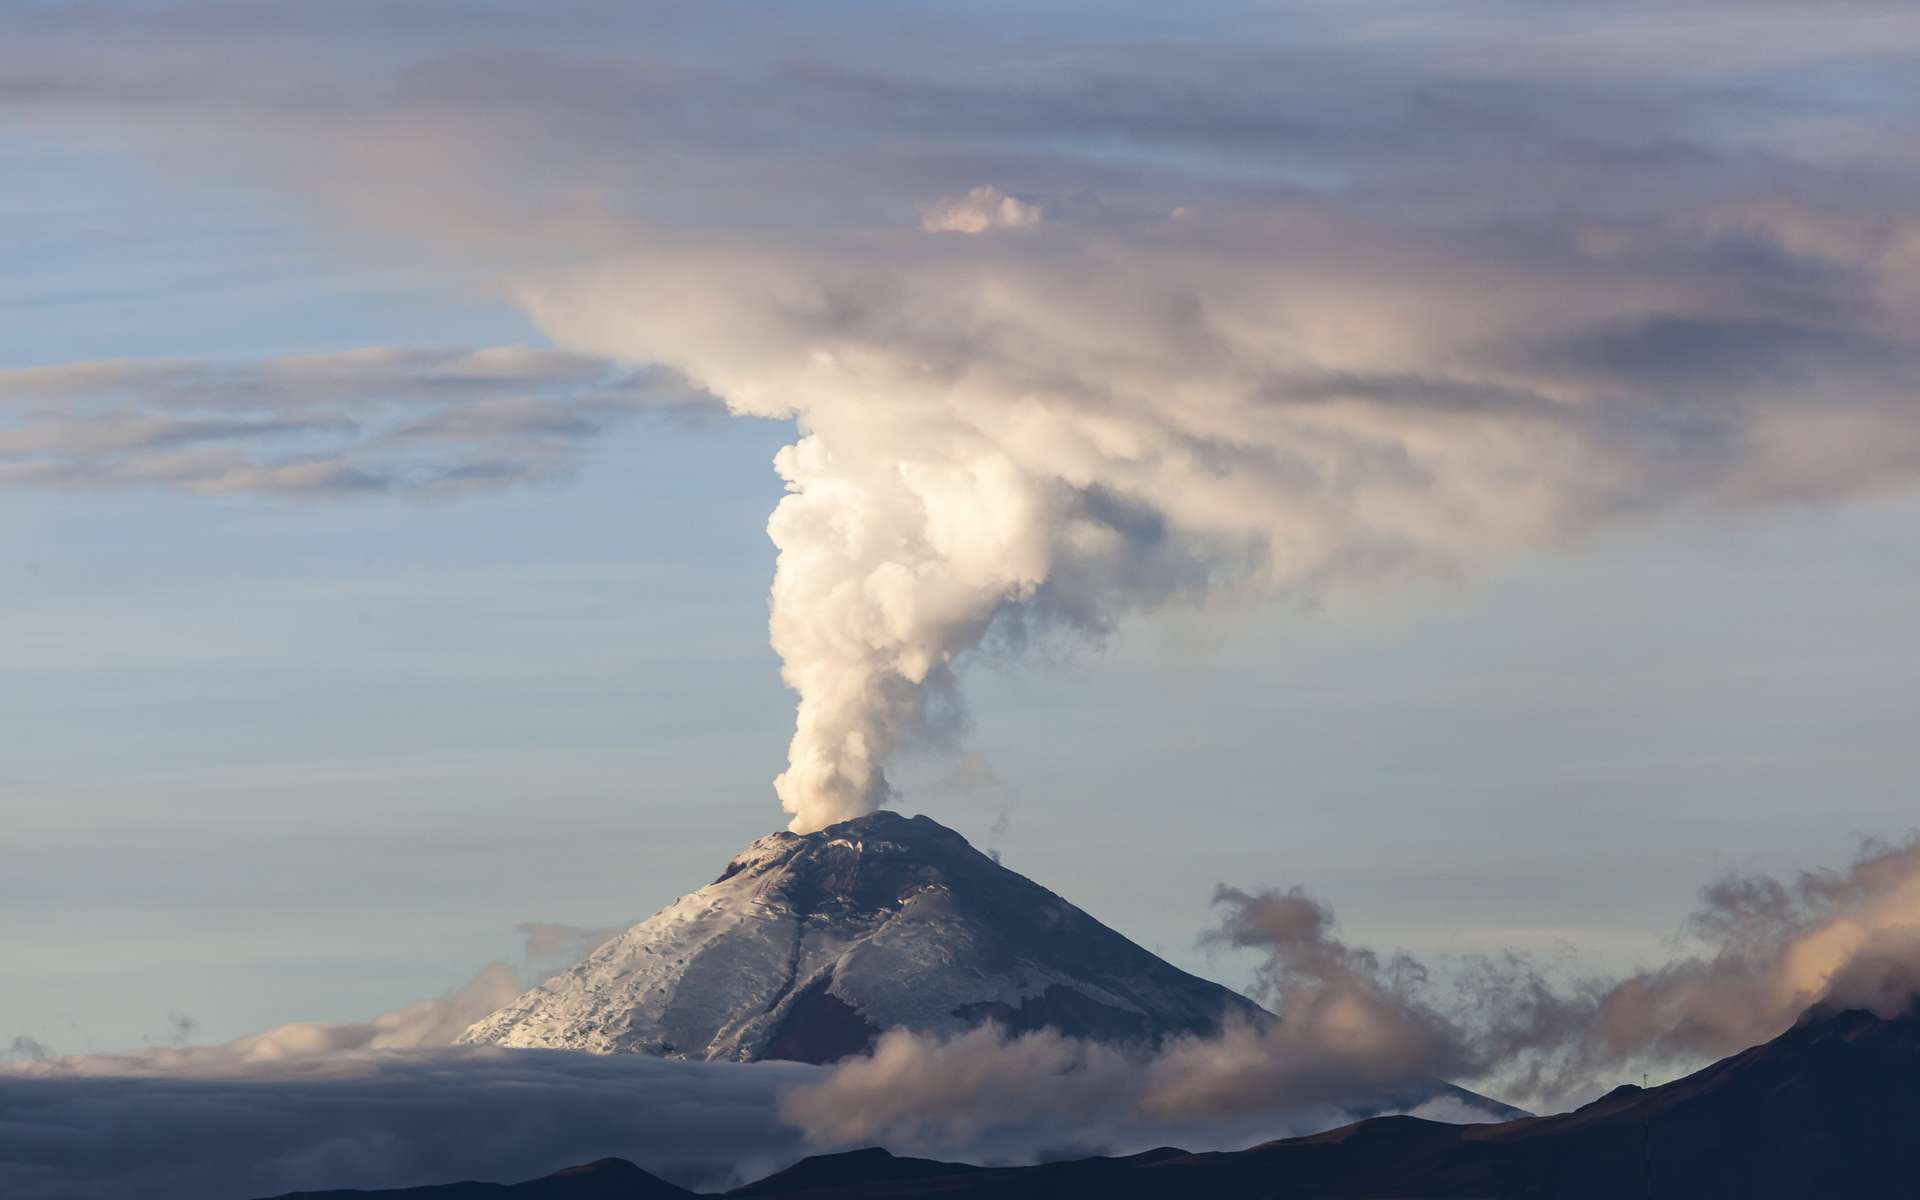 La quantité d'eau présente dans le magma influence sa capacité à remonter dans les conduits volcaniques. © Ecuadorquerido, Adobe Stock